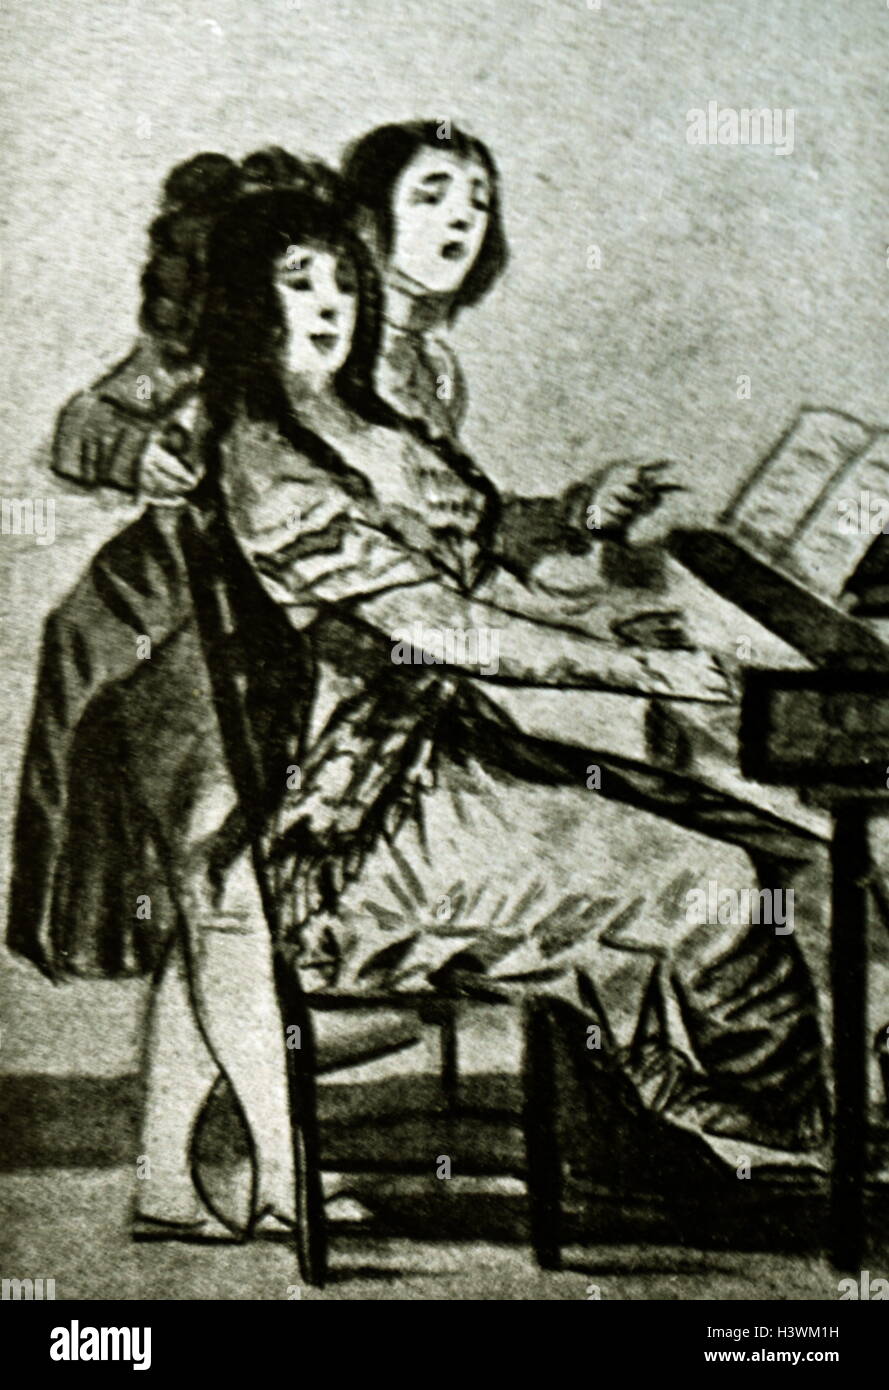 Schizzo di carbone di una donna la riproduzione di un pianoforte da Francisco Jose de Goya y Lucientes (1746-1828) un romantico spagnolo pittore e incisore. Datata del XIX secolo Foto Stock